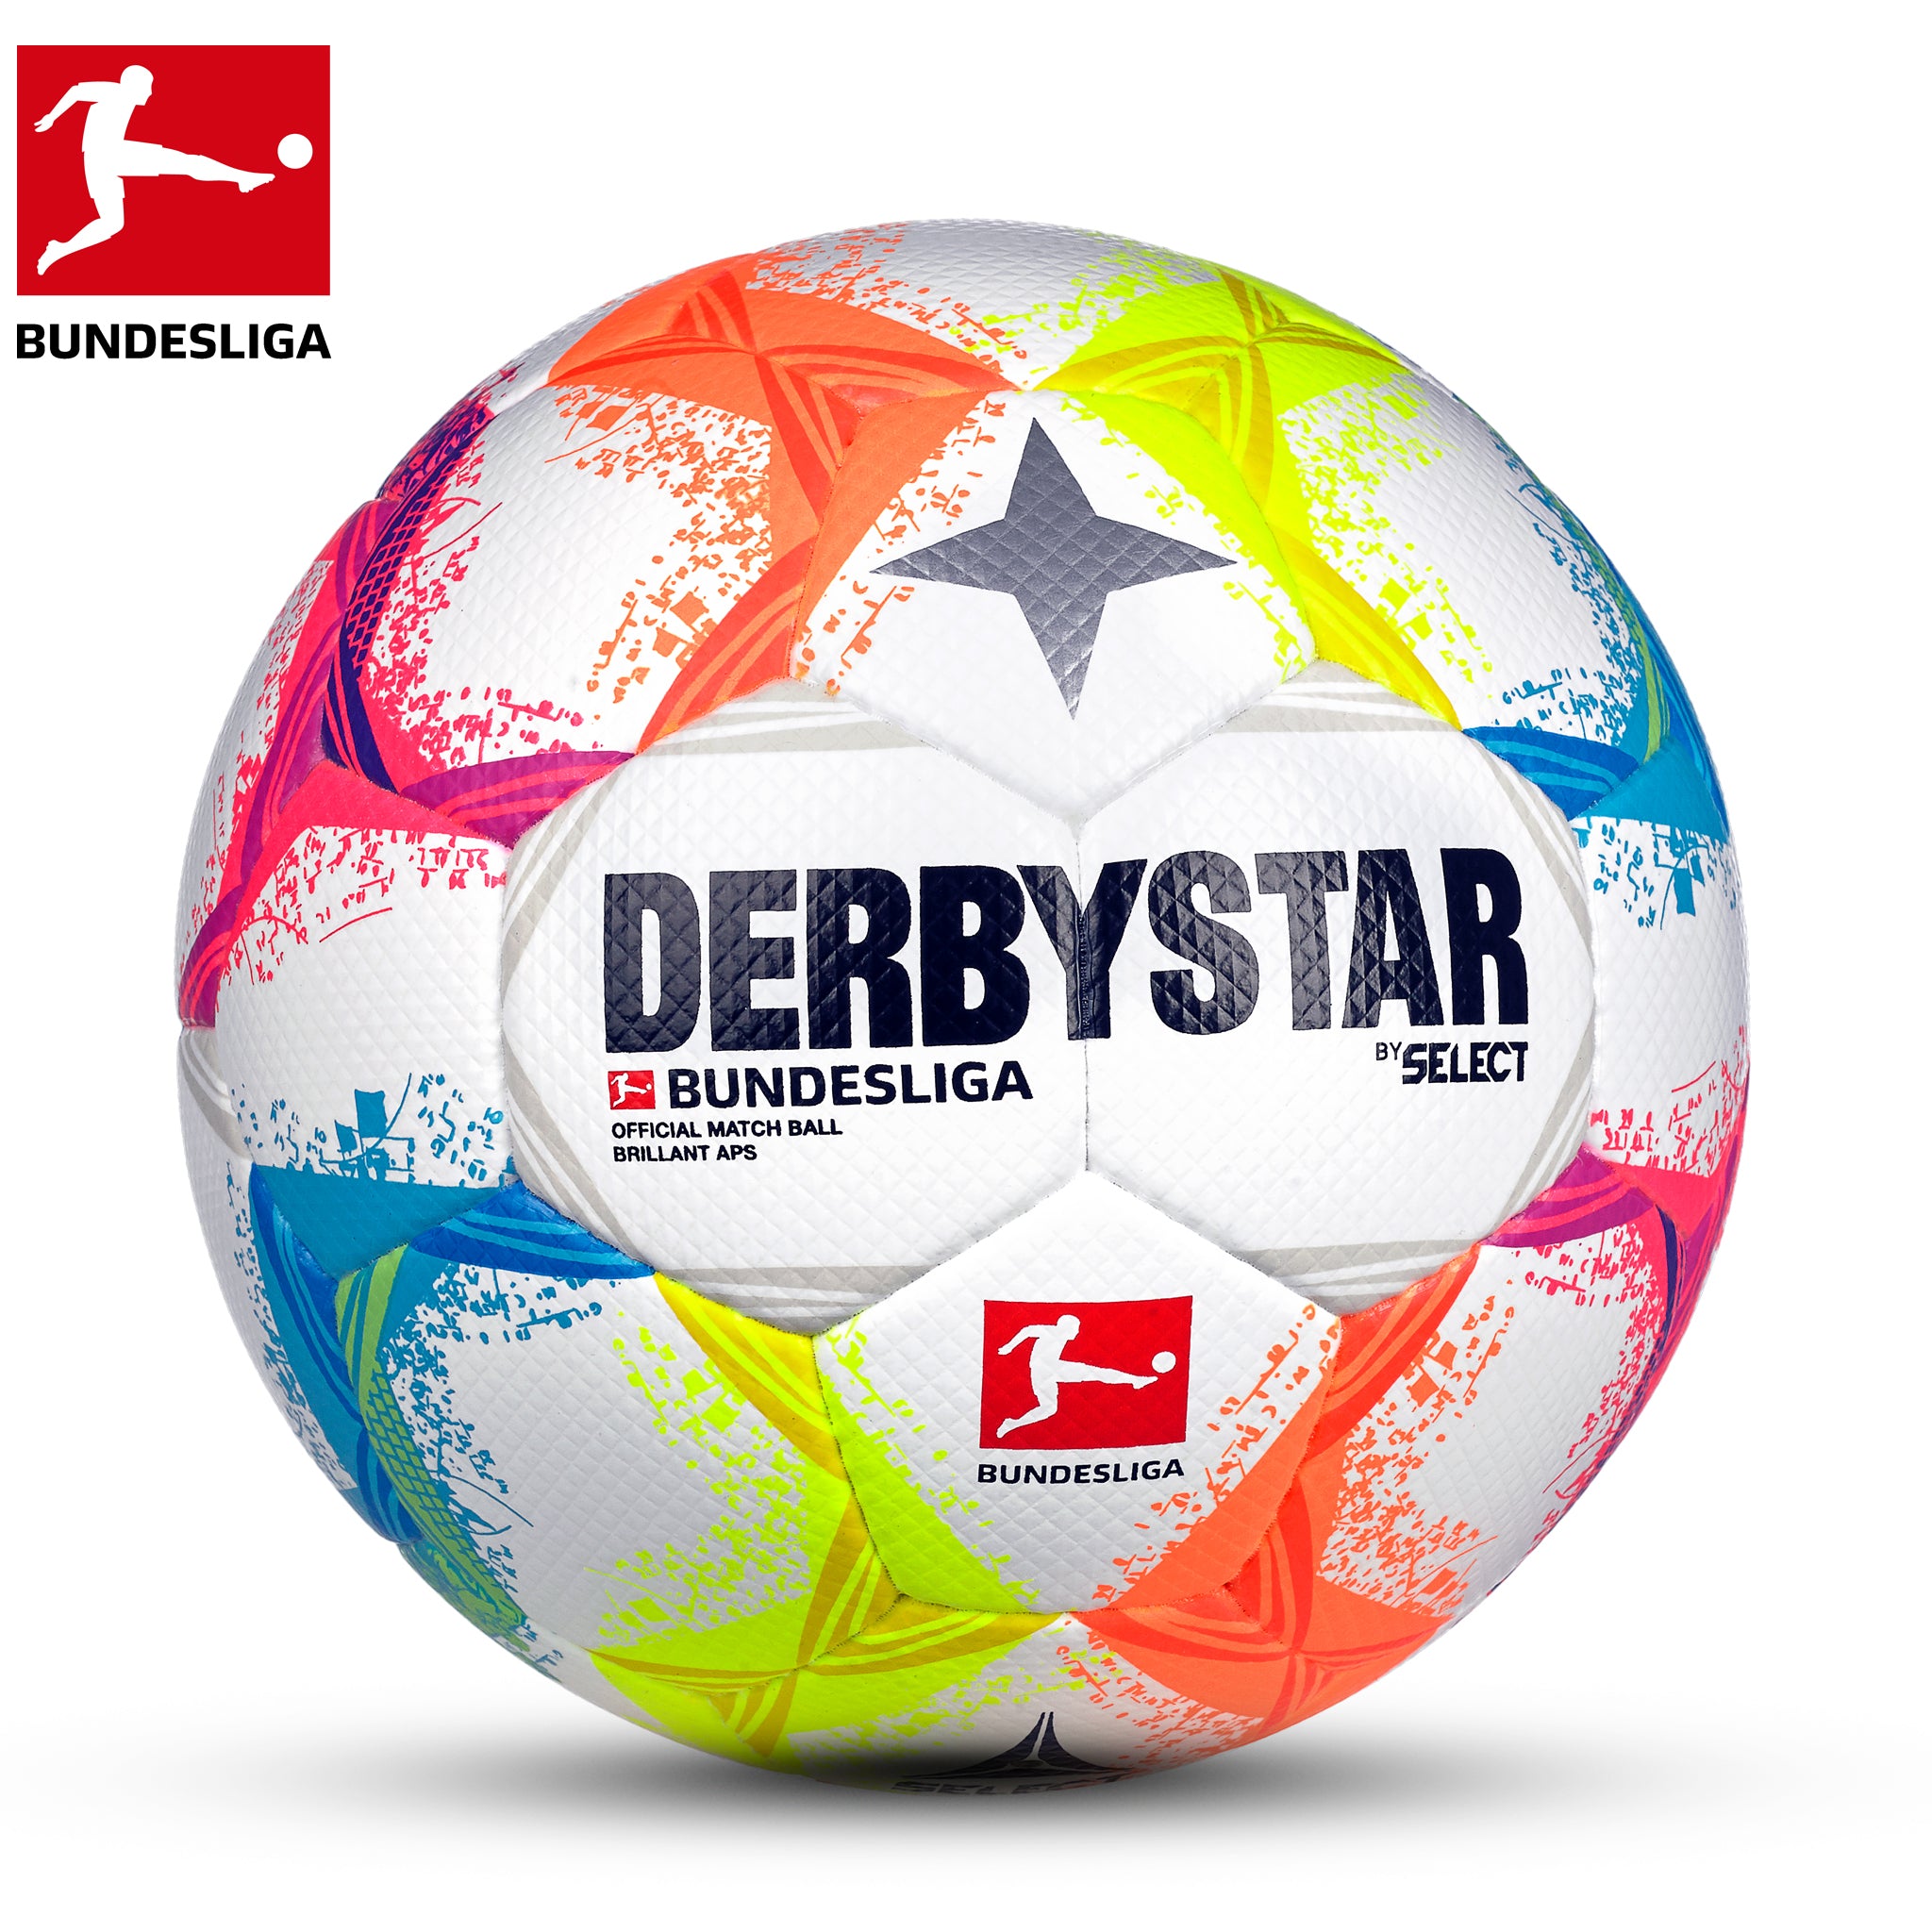 Derbystar Bundesliga Brillant APS 2022/23